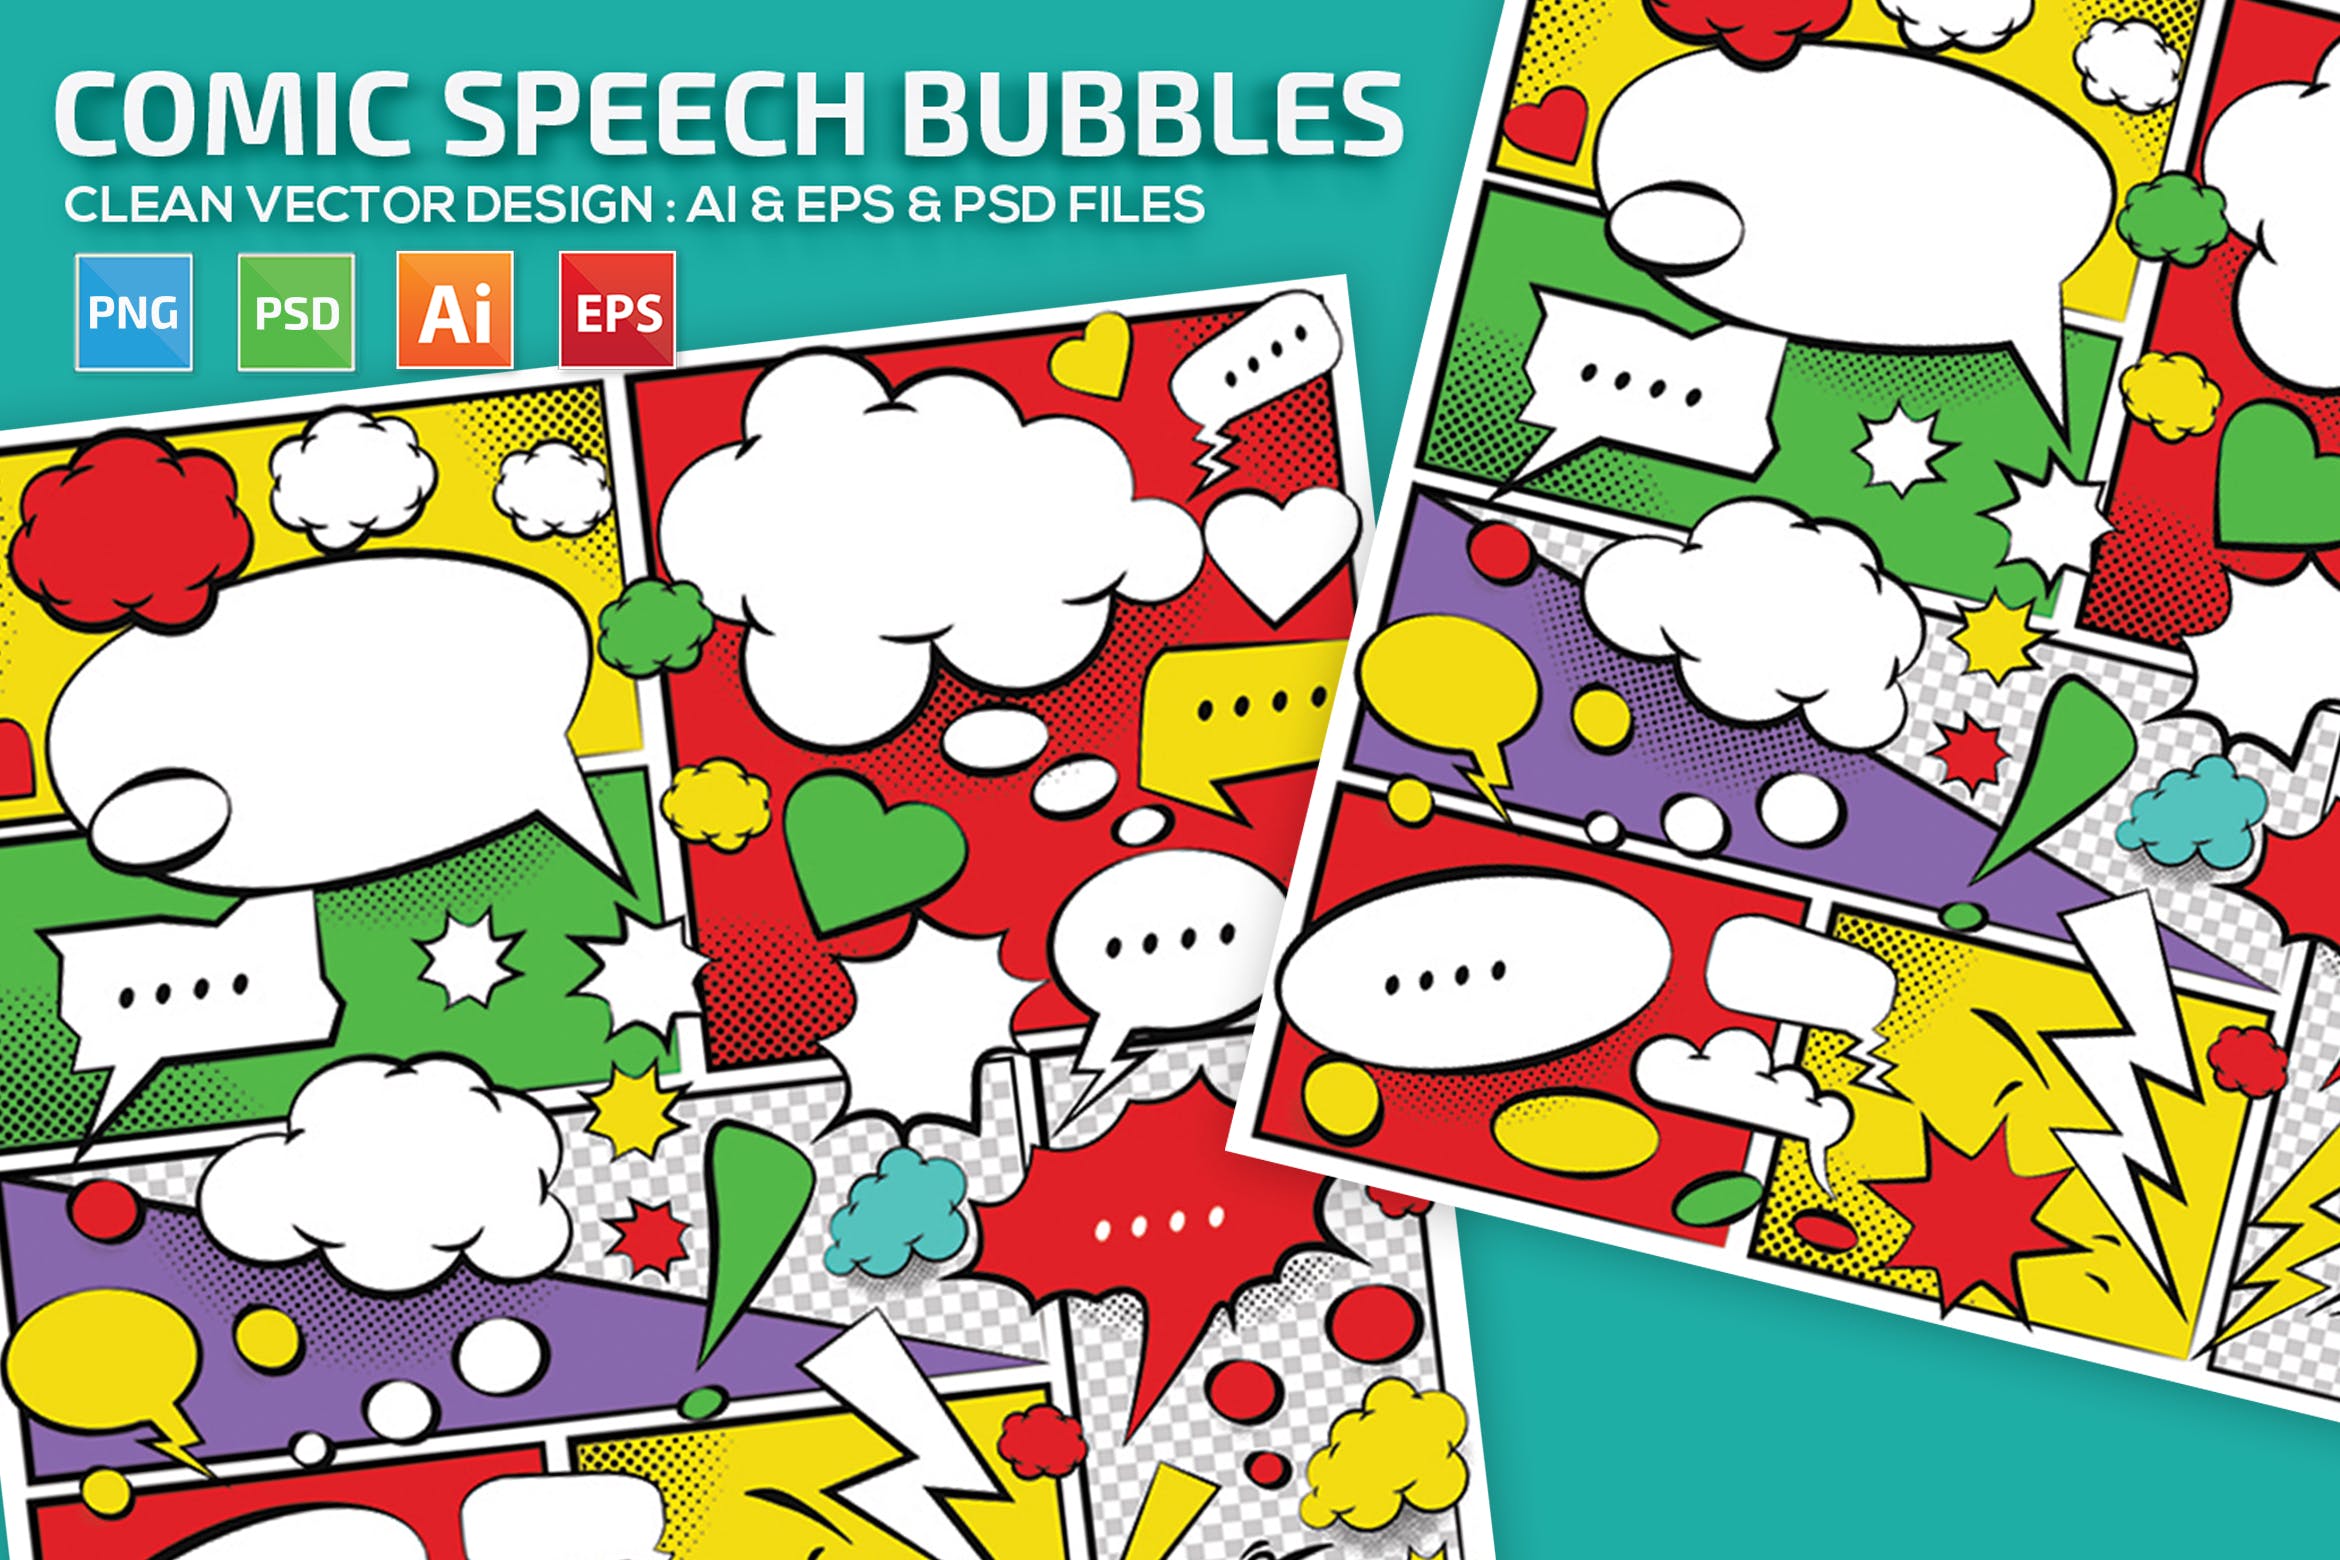 美式动漫对话泡泡框手绘图形设计素材 Comic Speech Bubbles Design插图